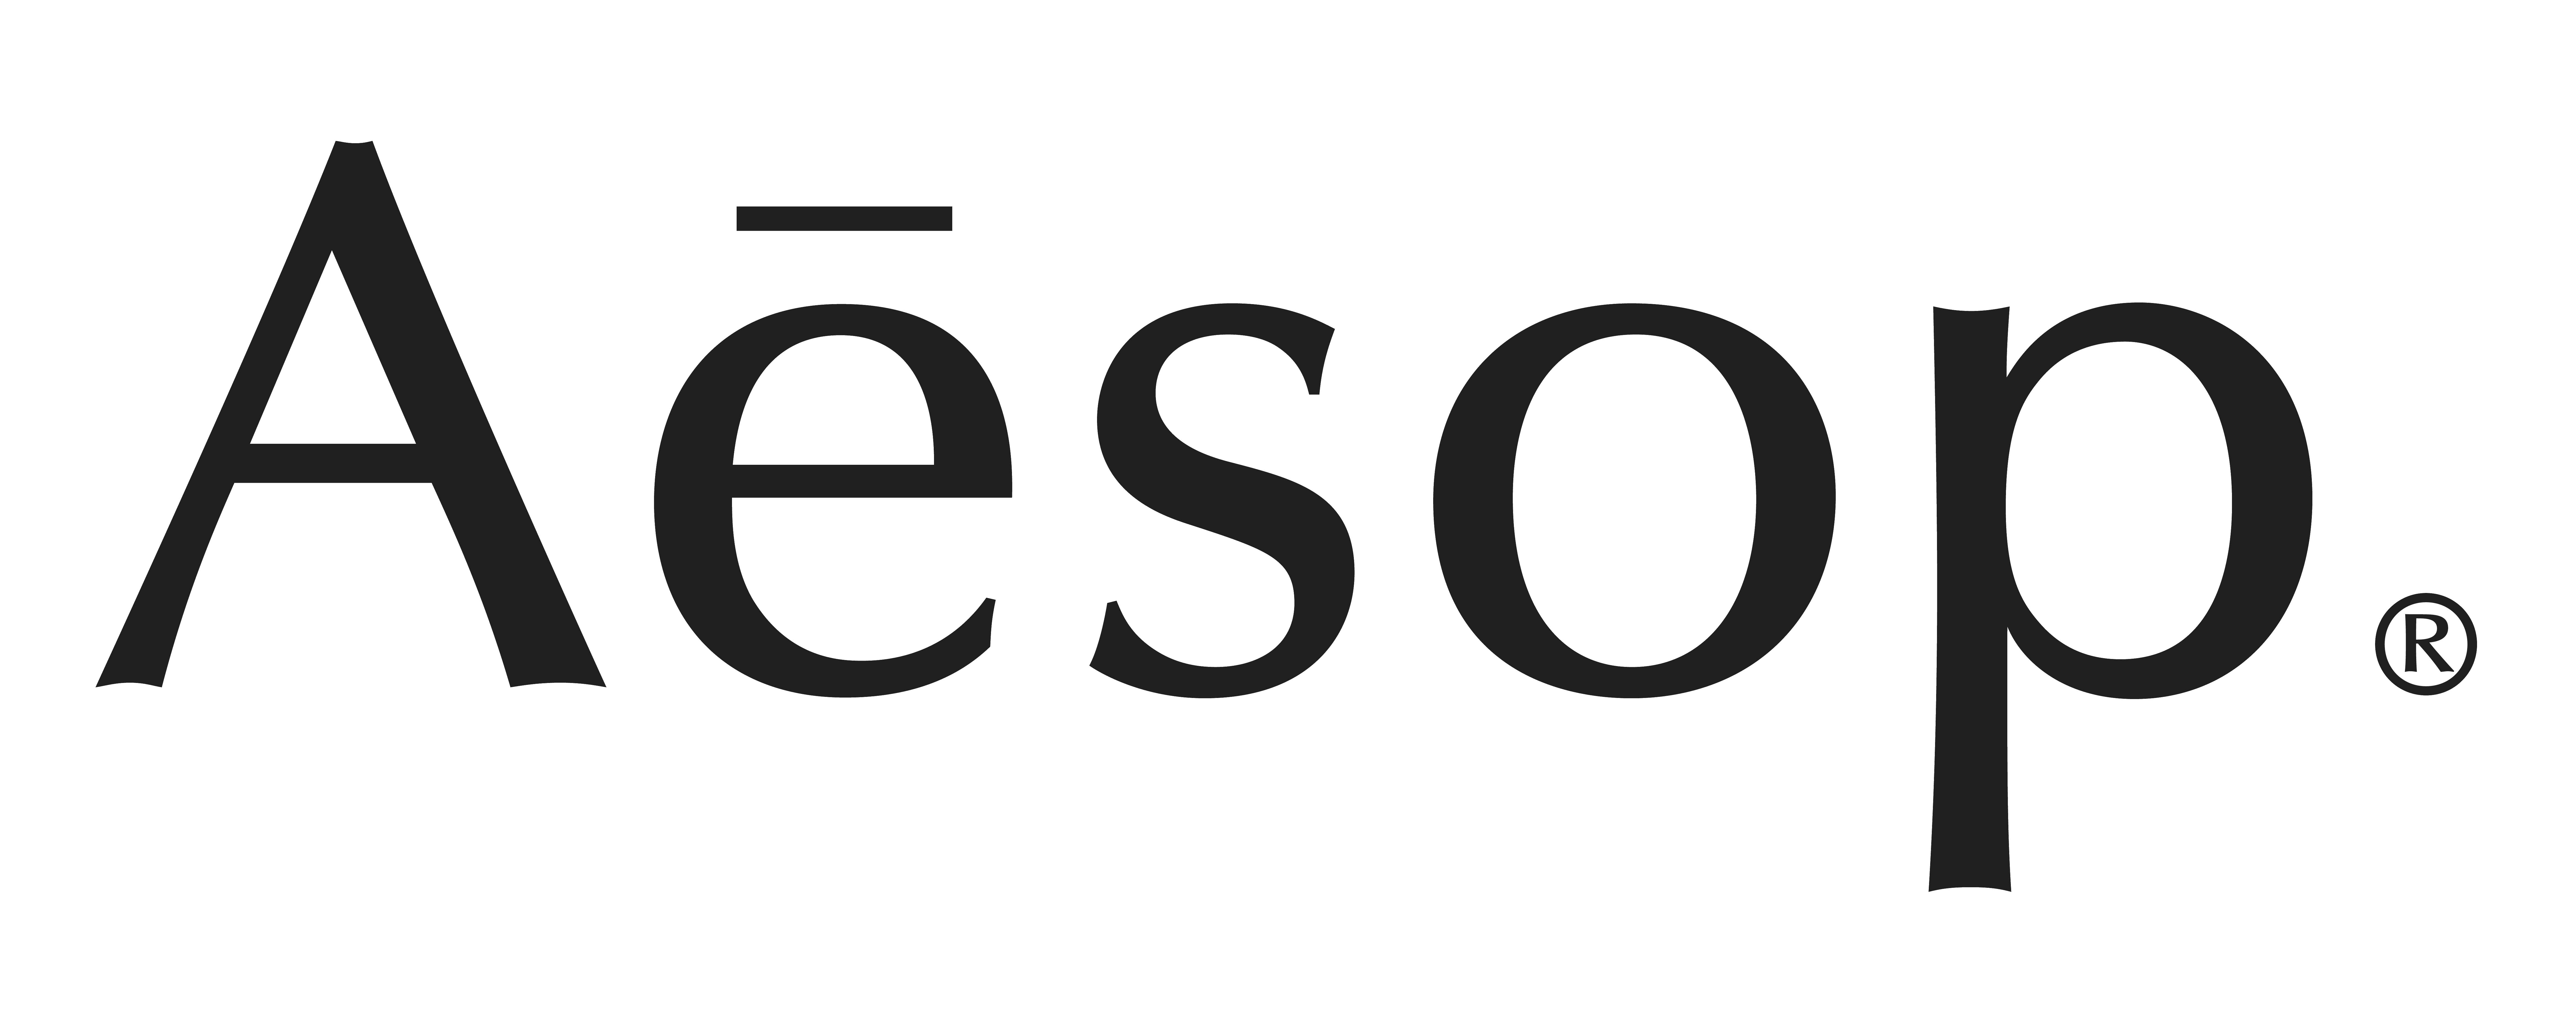 Mẫu thiết kế logo thương hiệu AESOP